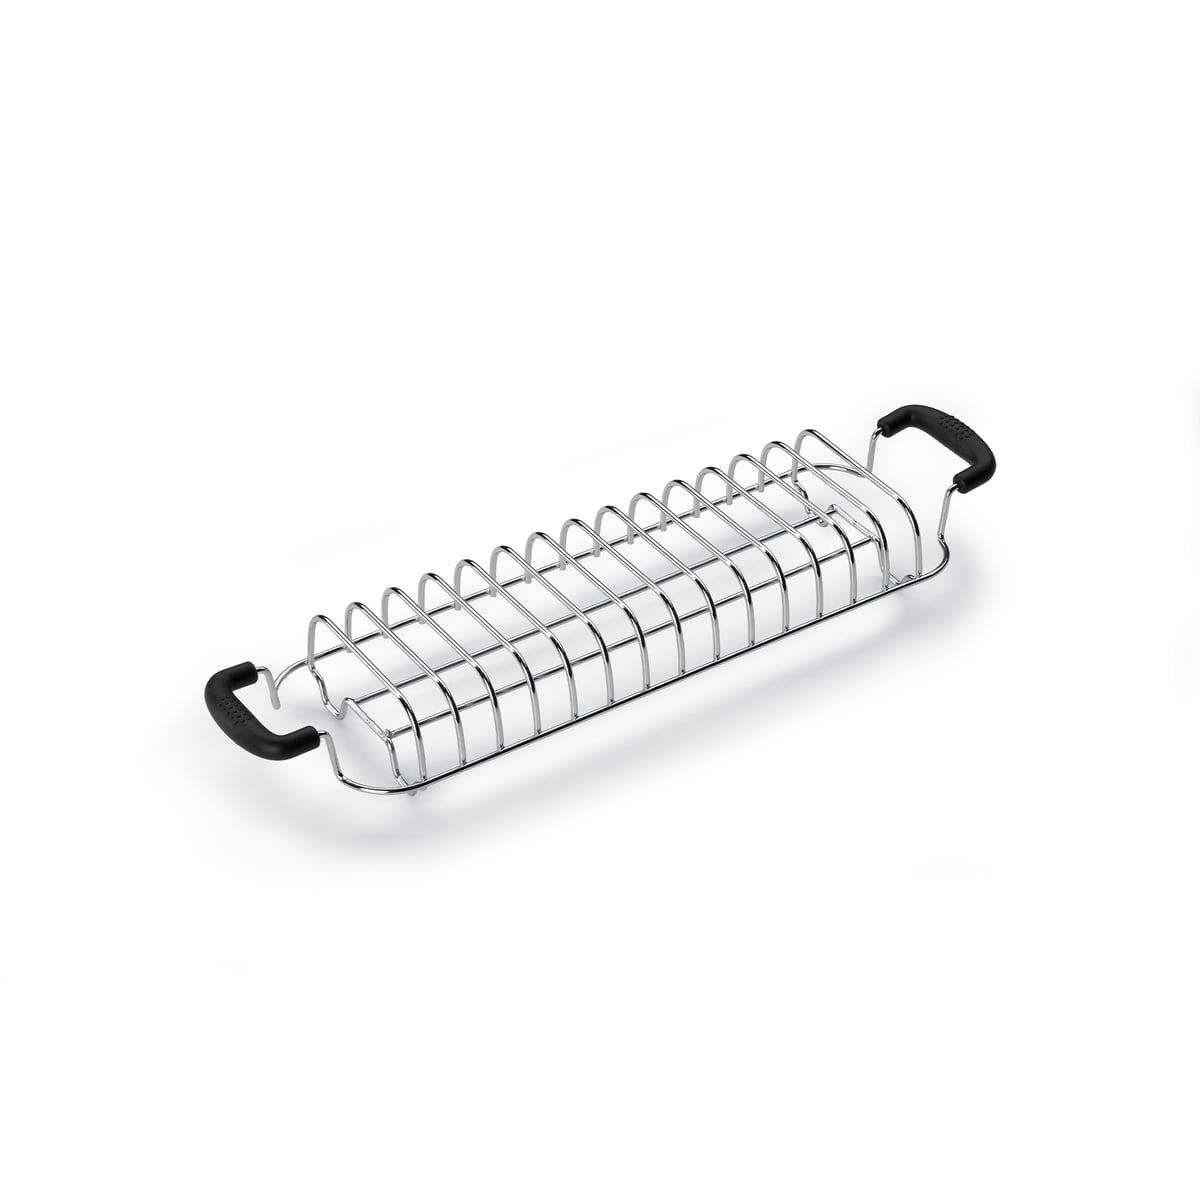 ergens bij betrokken zijn Precies Overvloedig Smeg - Roll toasting attachment for 4-slice toaster TSF02 | Connox